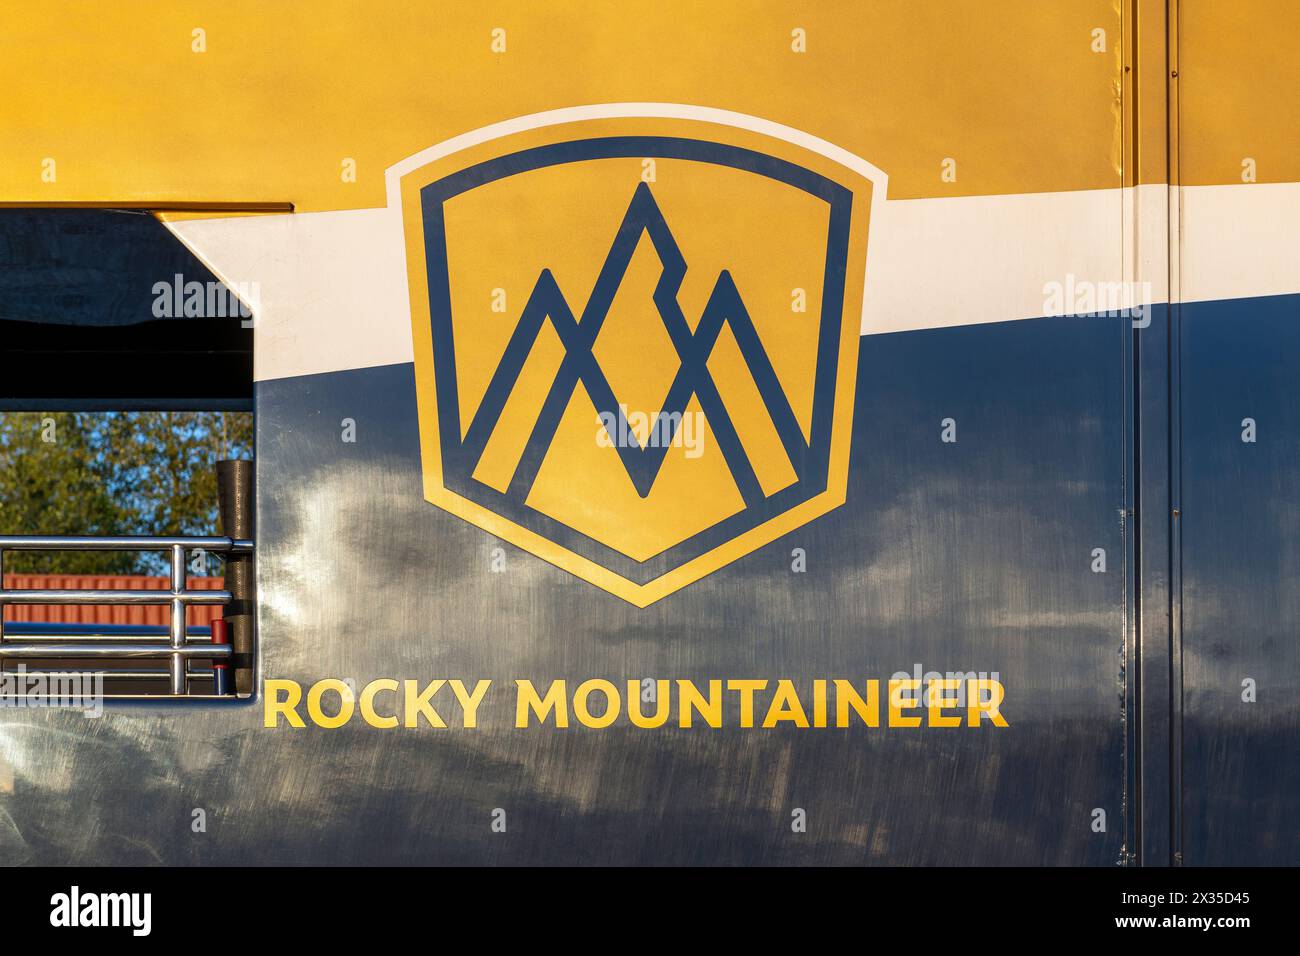 Carrozza in foglia d'oro del treno Rocky Mountaineer con logo, British Columbia, Canada. Foto Stock